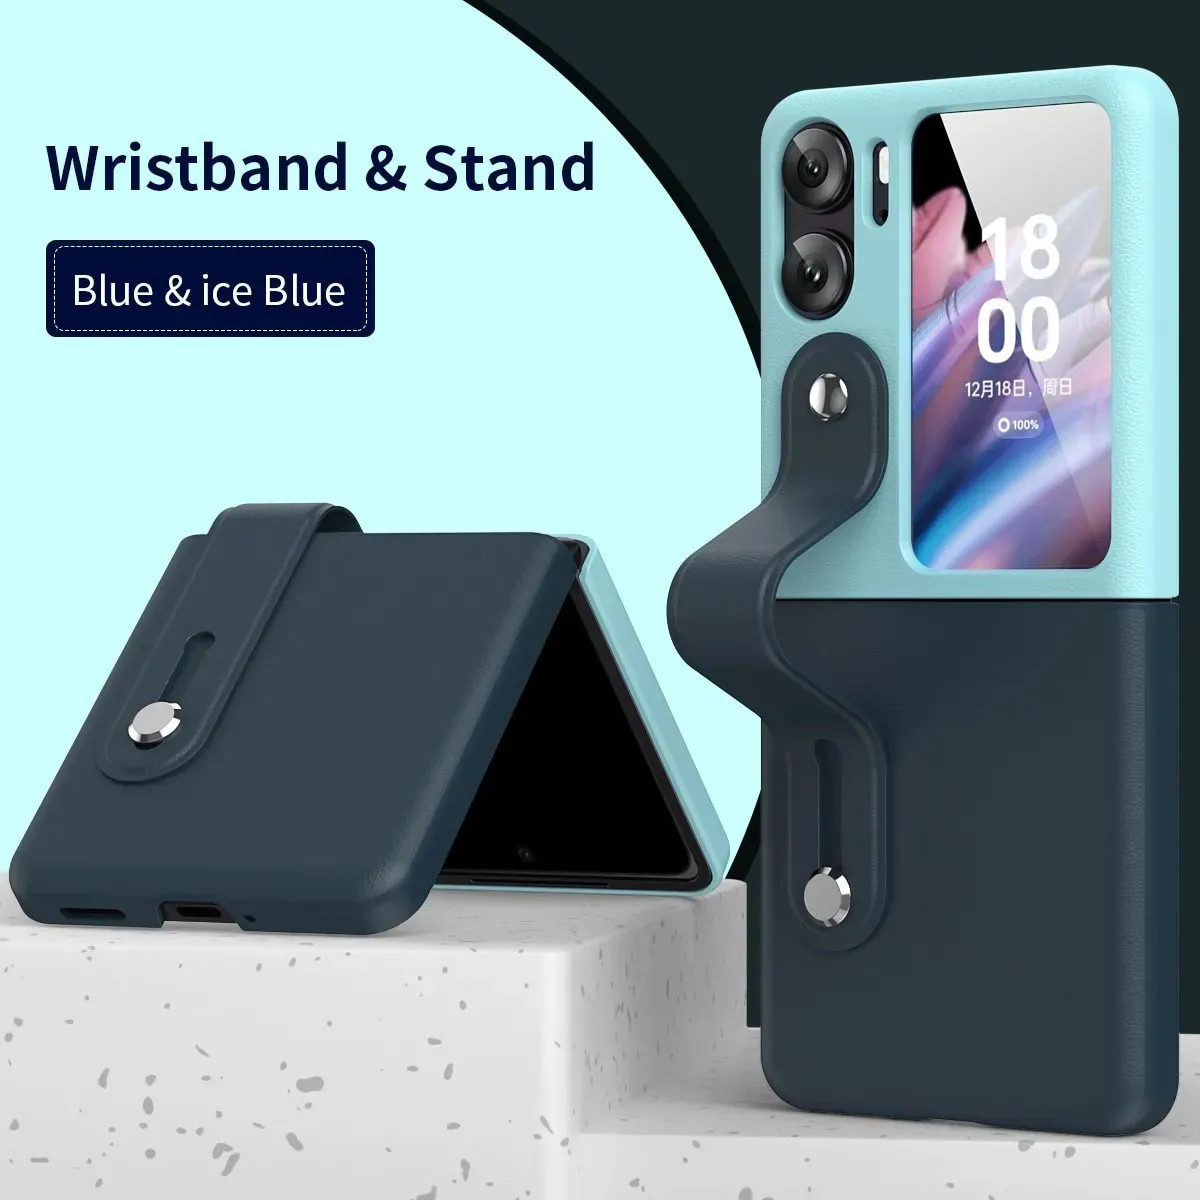 Ốp lưng đai đeo hand trap chống sốc cho Oppo Find N2 Flip hiệu HOTCASE Wristband Stand Phone Case - chất liệu cao cấp, thiết kế thời trang sang trọng có đai đeo tay an toàn